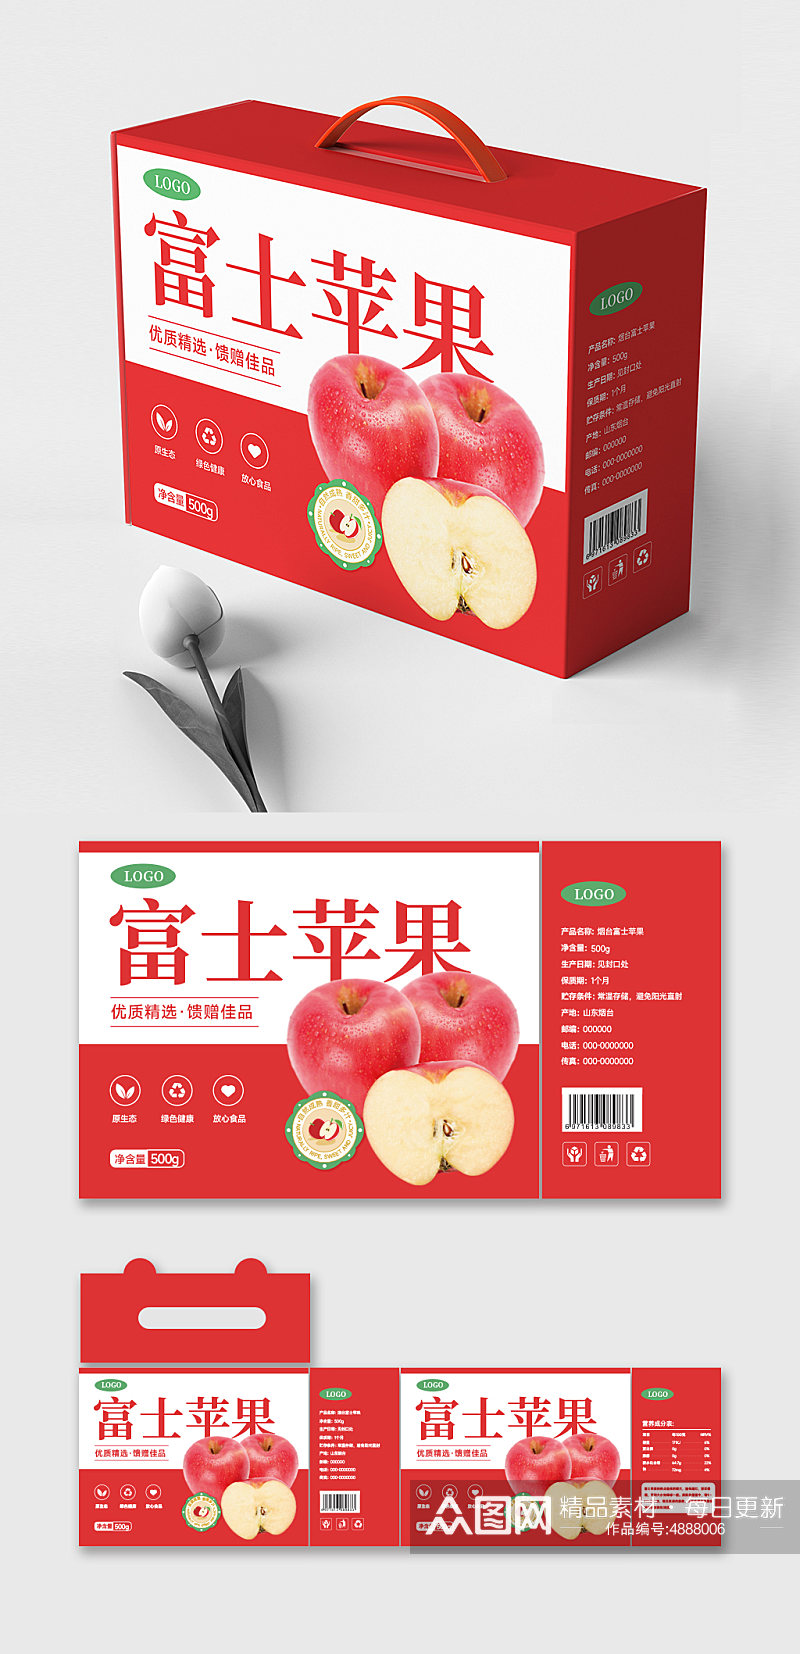 农产品红富士水果苹果箱包装盒礼盒包装设计素材